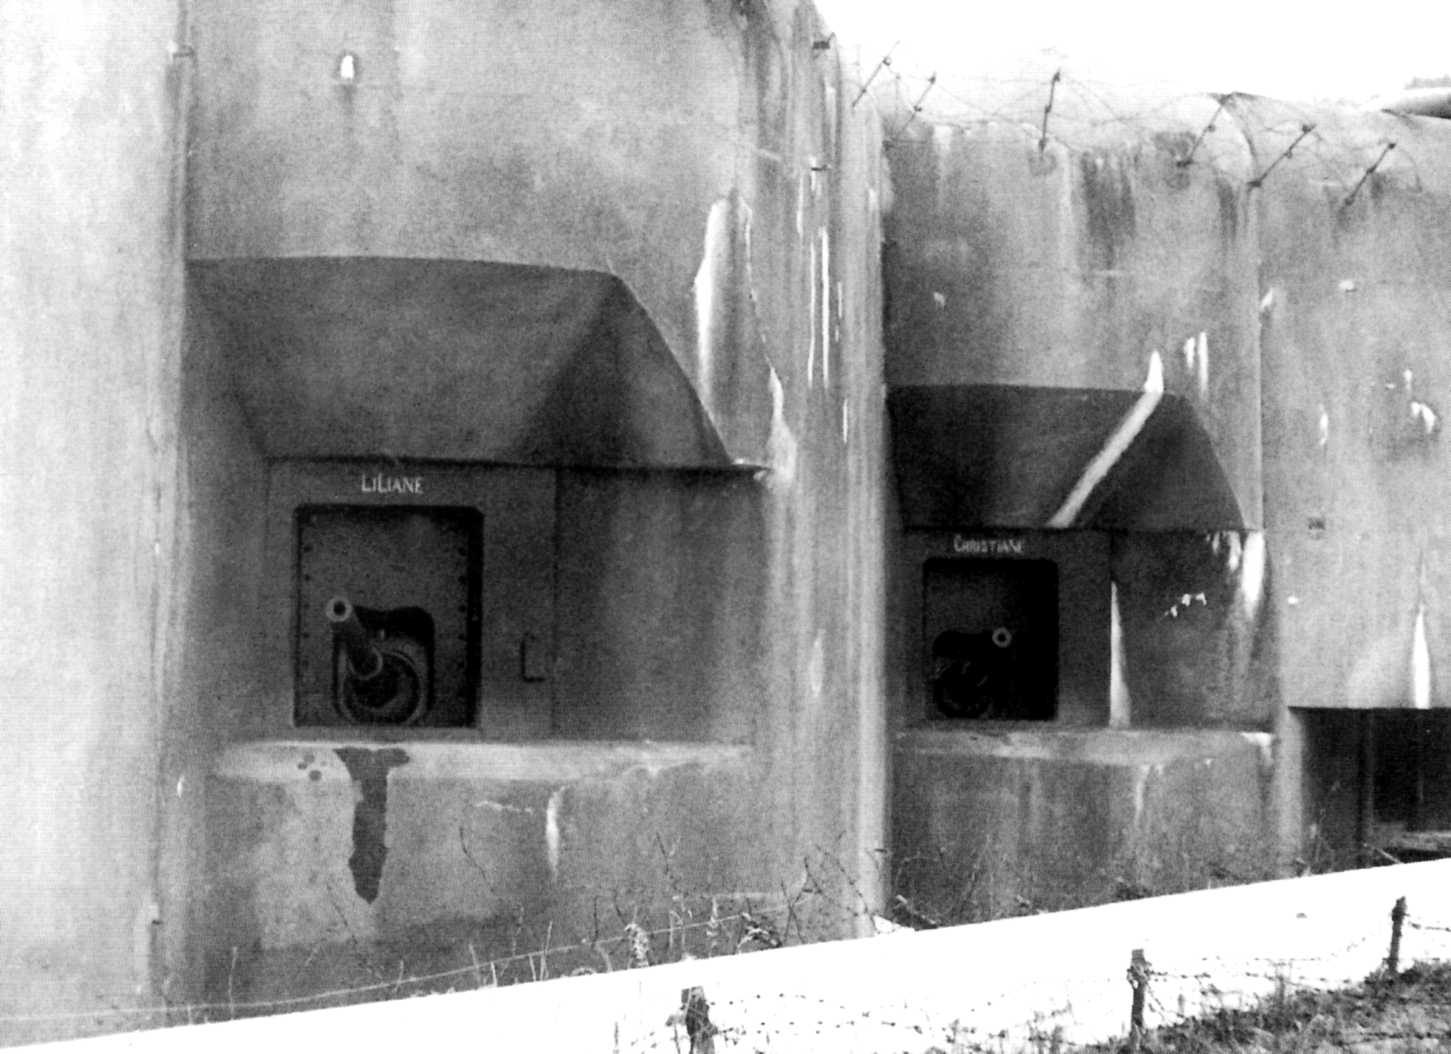 Ligne Maginot - HOCHWALD - (Ouvrage d'artillerie) - Le bloc 12  - Casemate d'artillerie
Canons de 75 modèle 29
Les deux embrasures des canons Liliane et Christiane